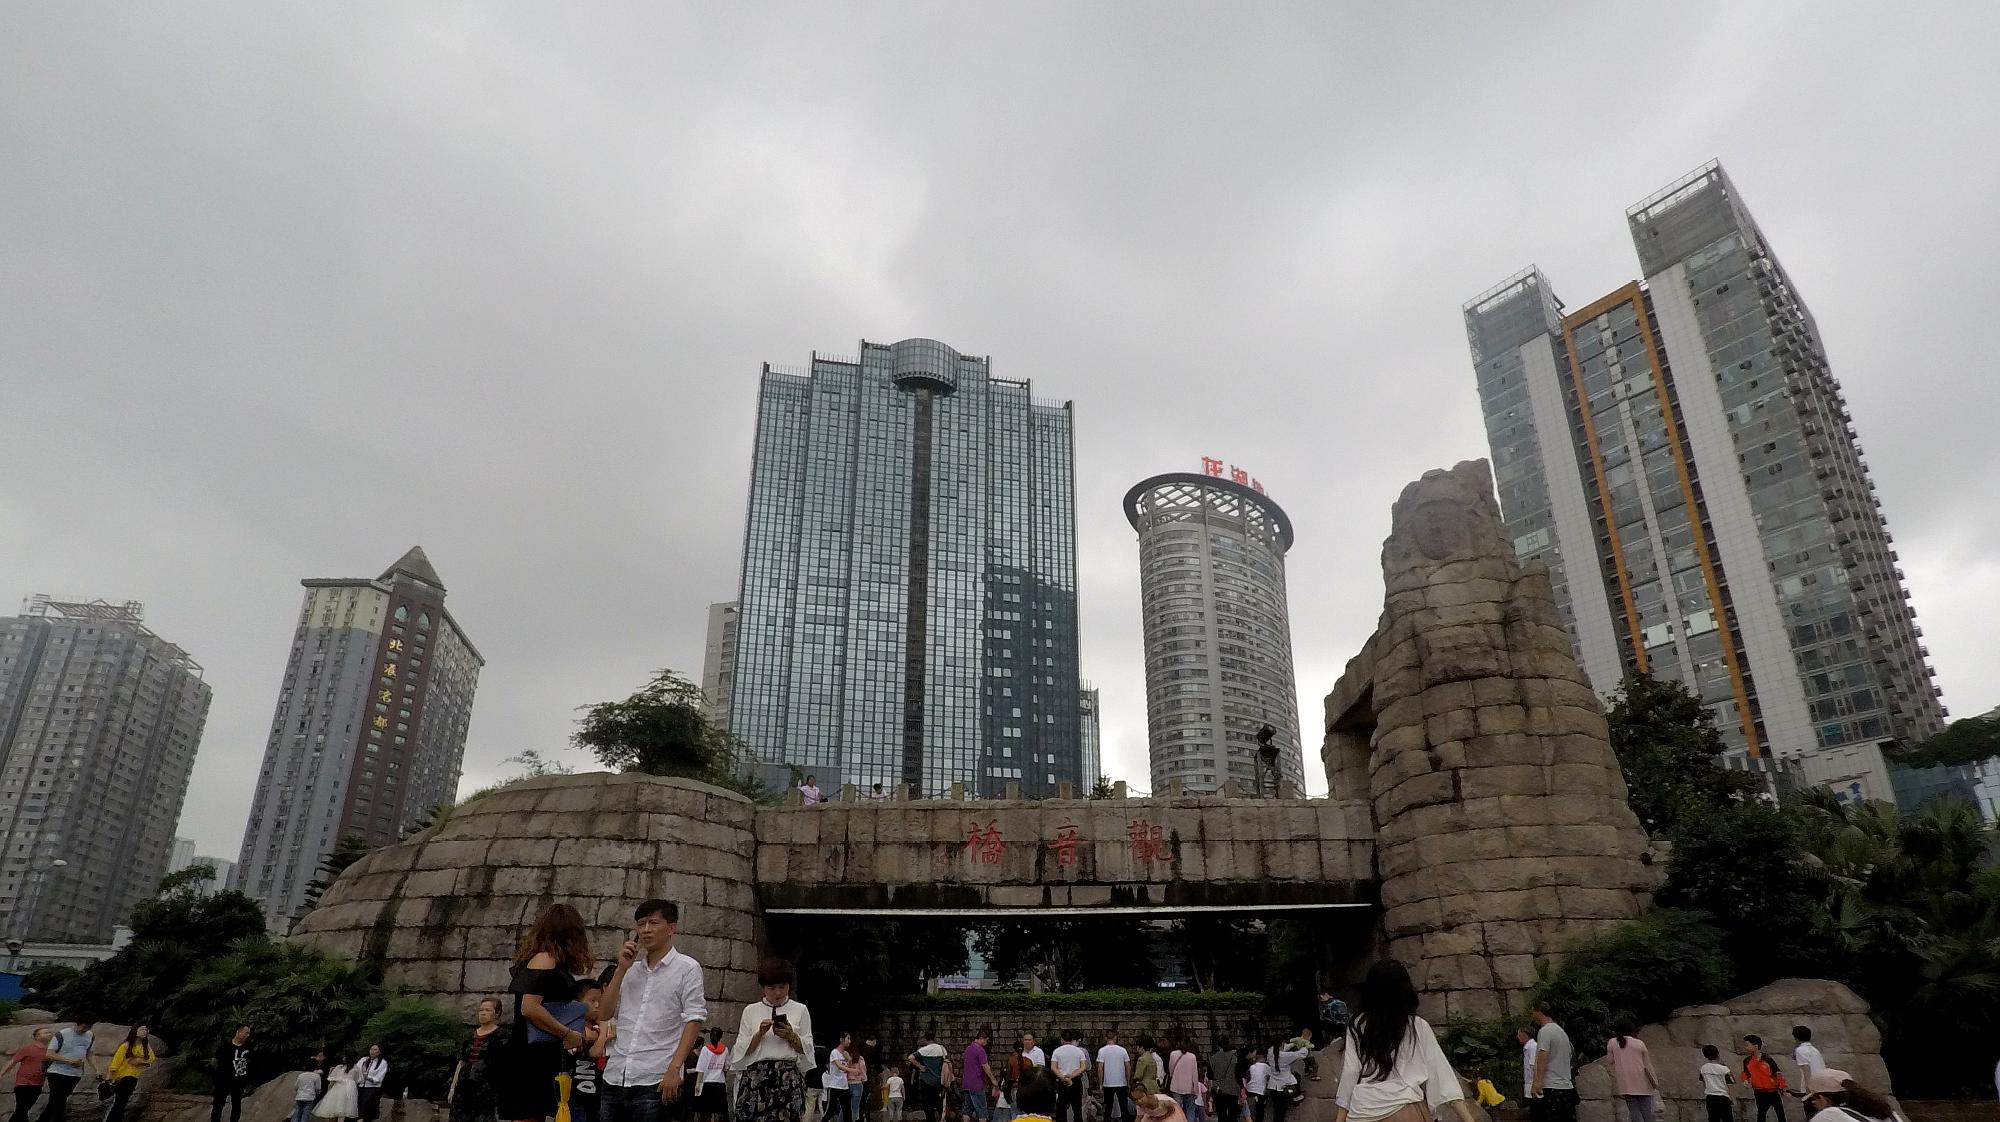 重庆观音桥步行街,西南地区最大的步行街,也是美女最多的